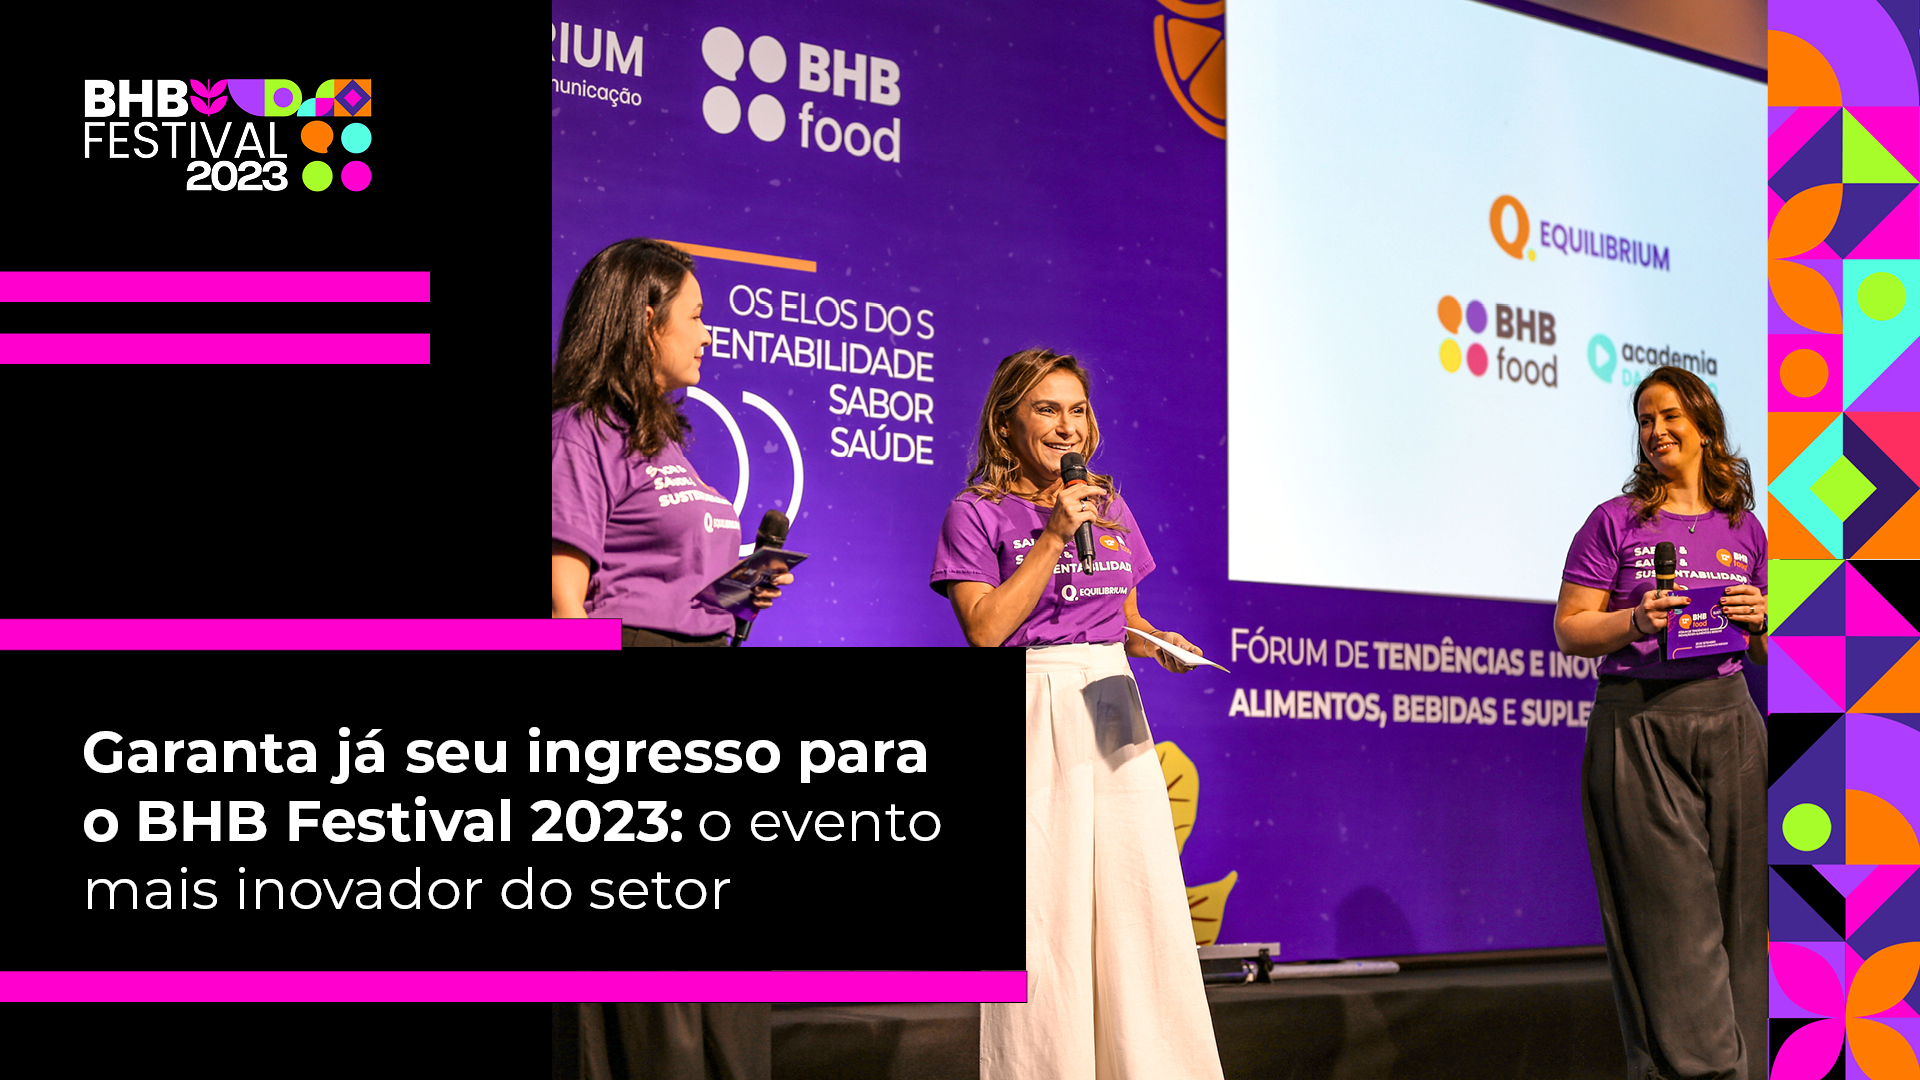 BHB Festival 2023 reúne setor de alimentos e bebidas para negócios, aprendizado e inovação